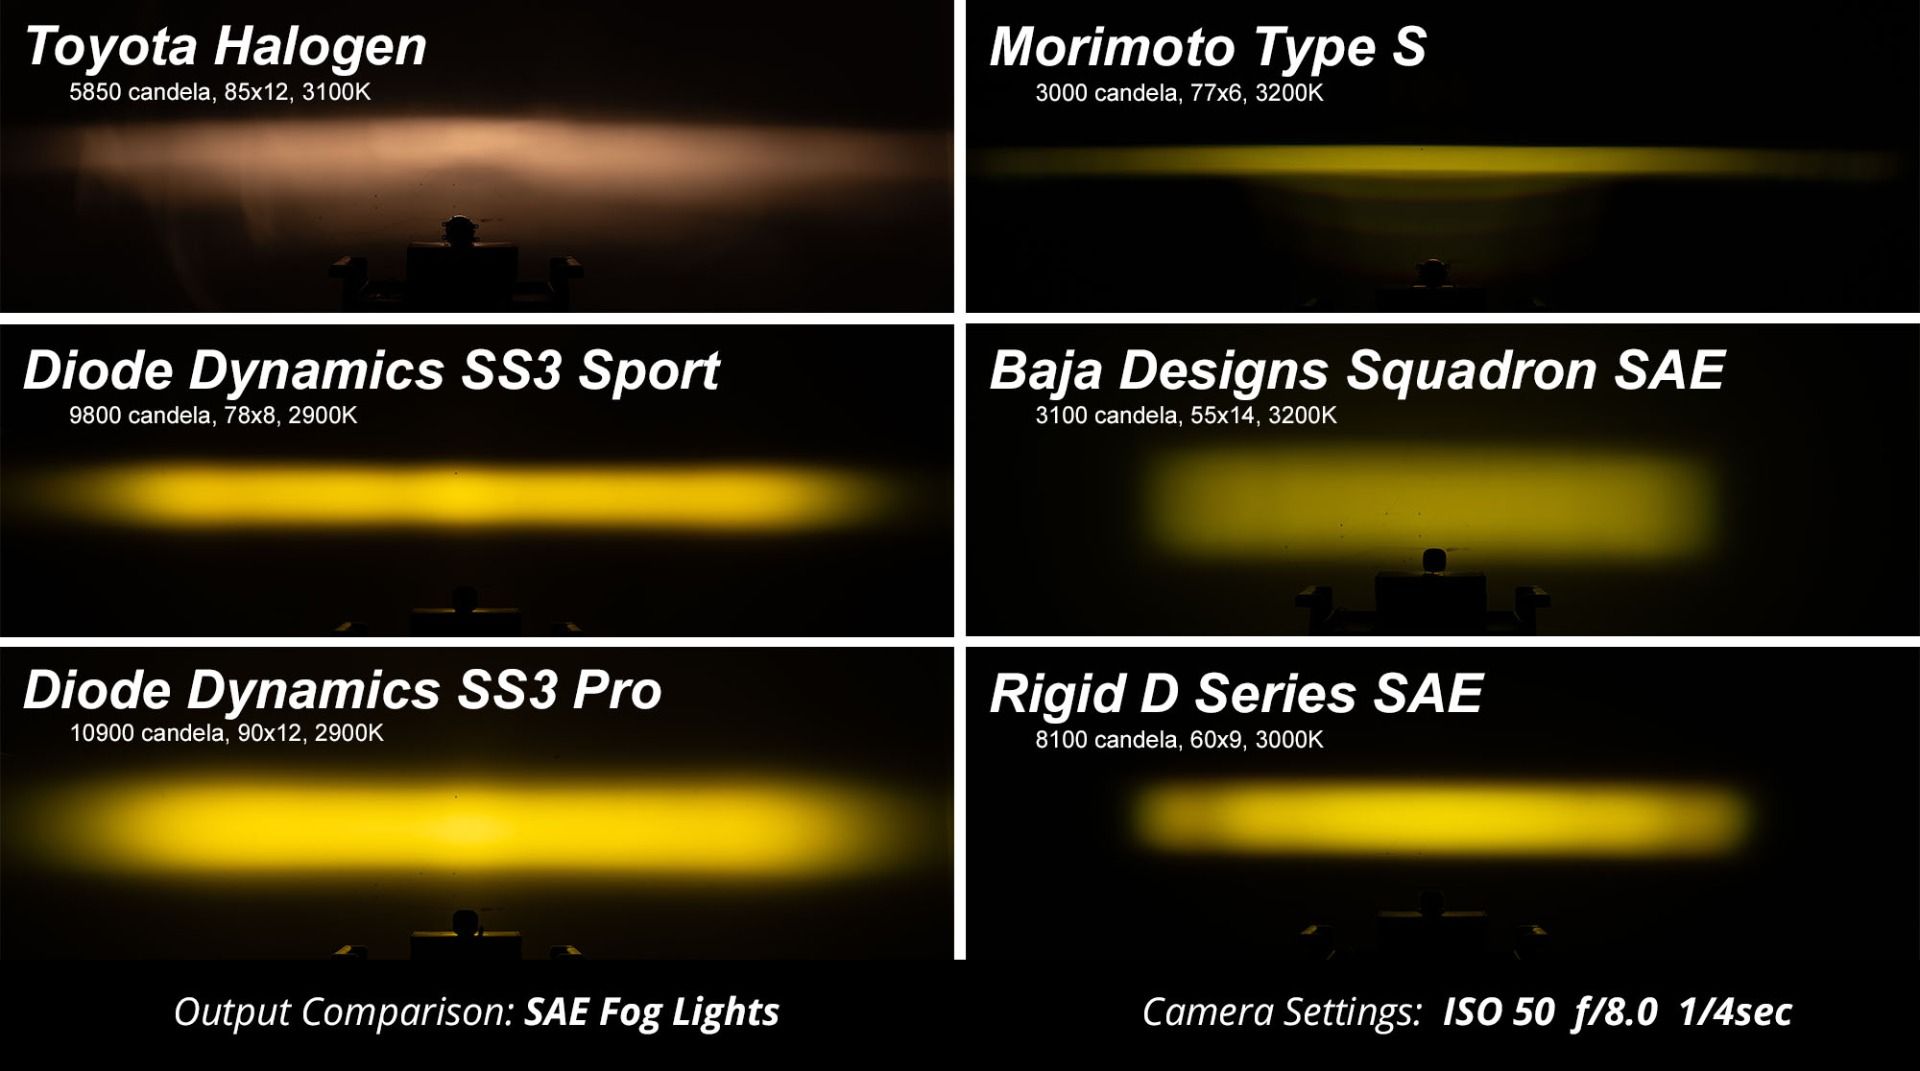 SS3 LED Fog Light Kit for 2007-2015 Chevrolet Silverado